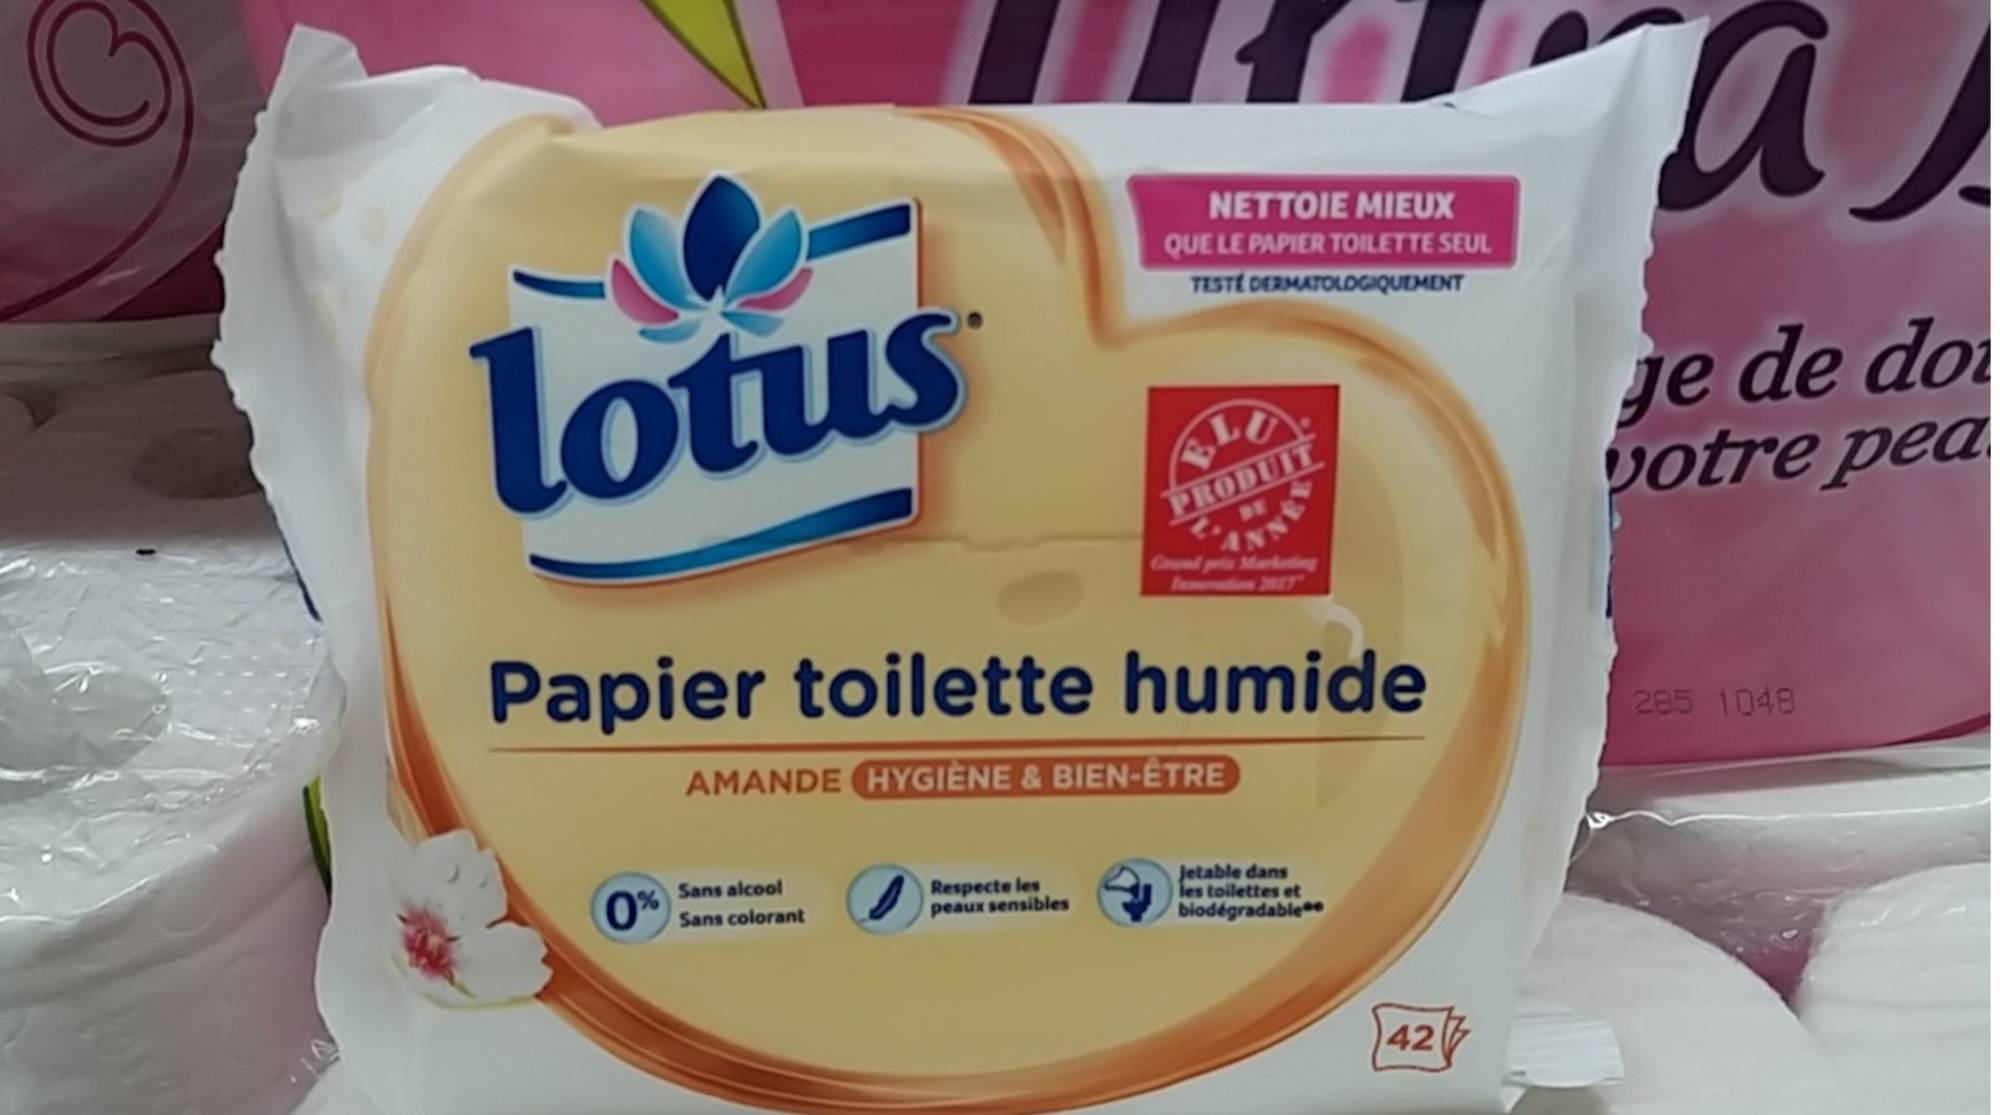 Lotus Papier Toilette Humide Le P'tit Coin pour enfants - 42 lingettes -  INCI Beauty